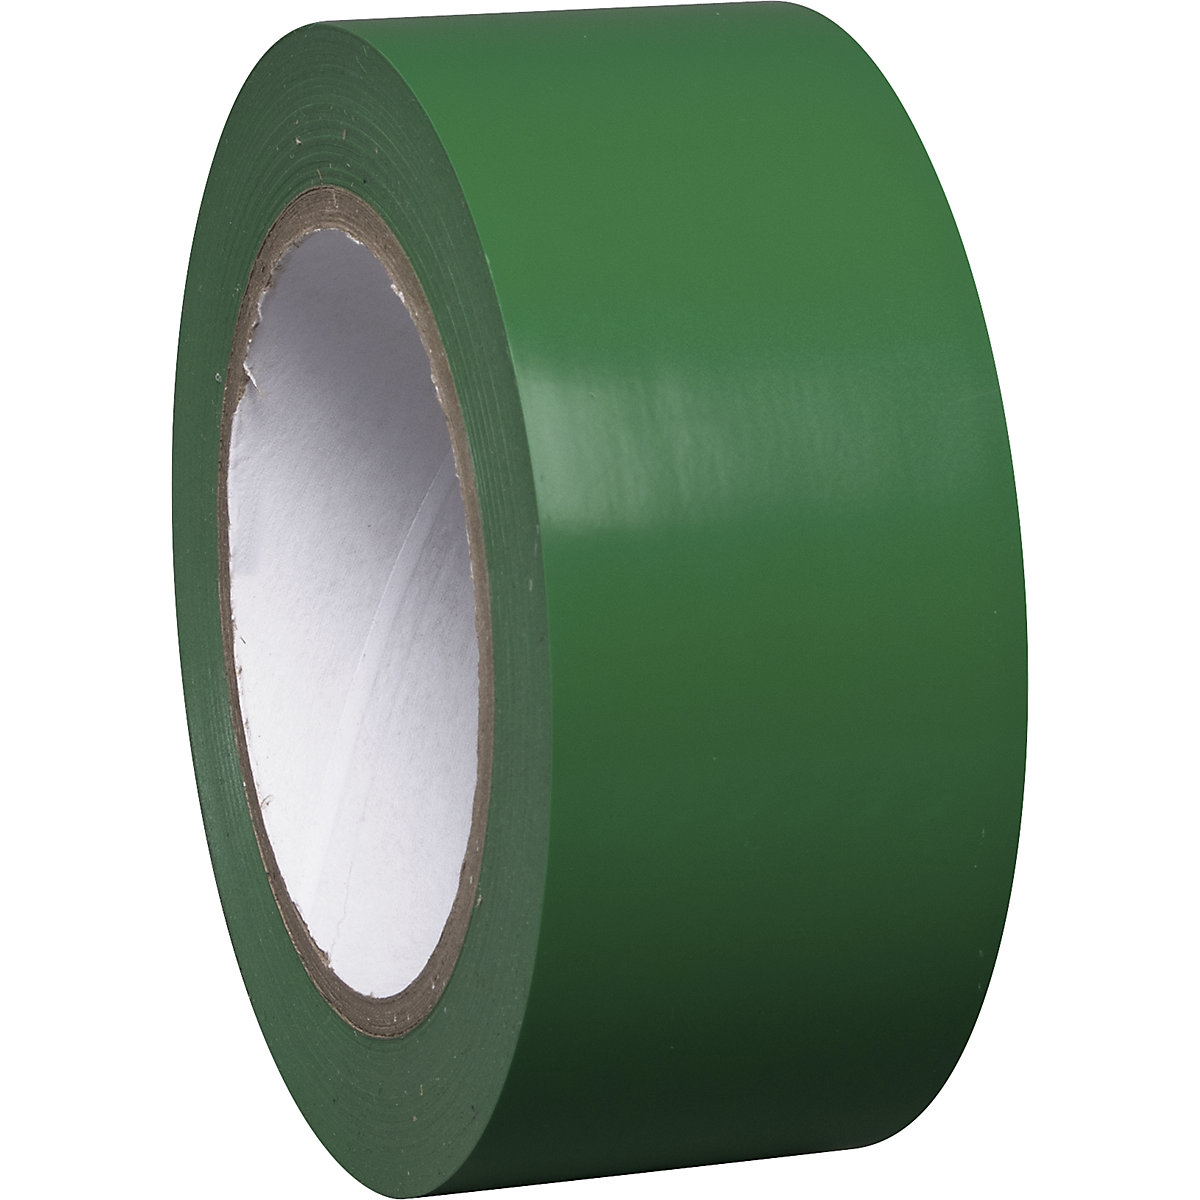 Traka za označavanje podova od vinila, jednobojna, širina 50 mm, u zelenoj boji, pak. 8 rola-3